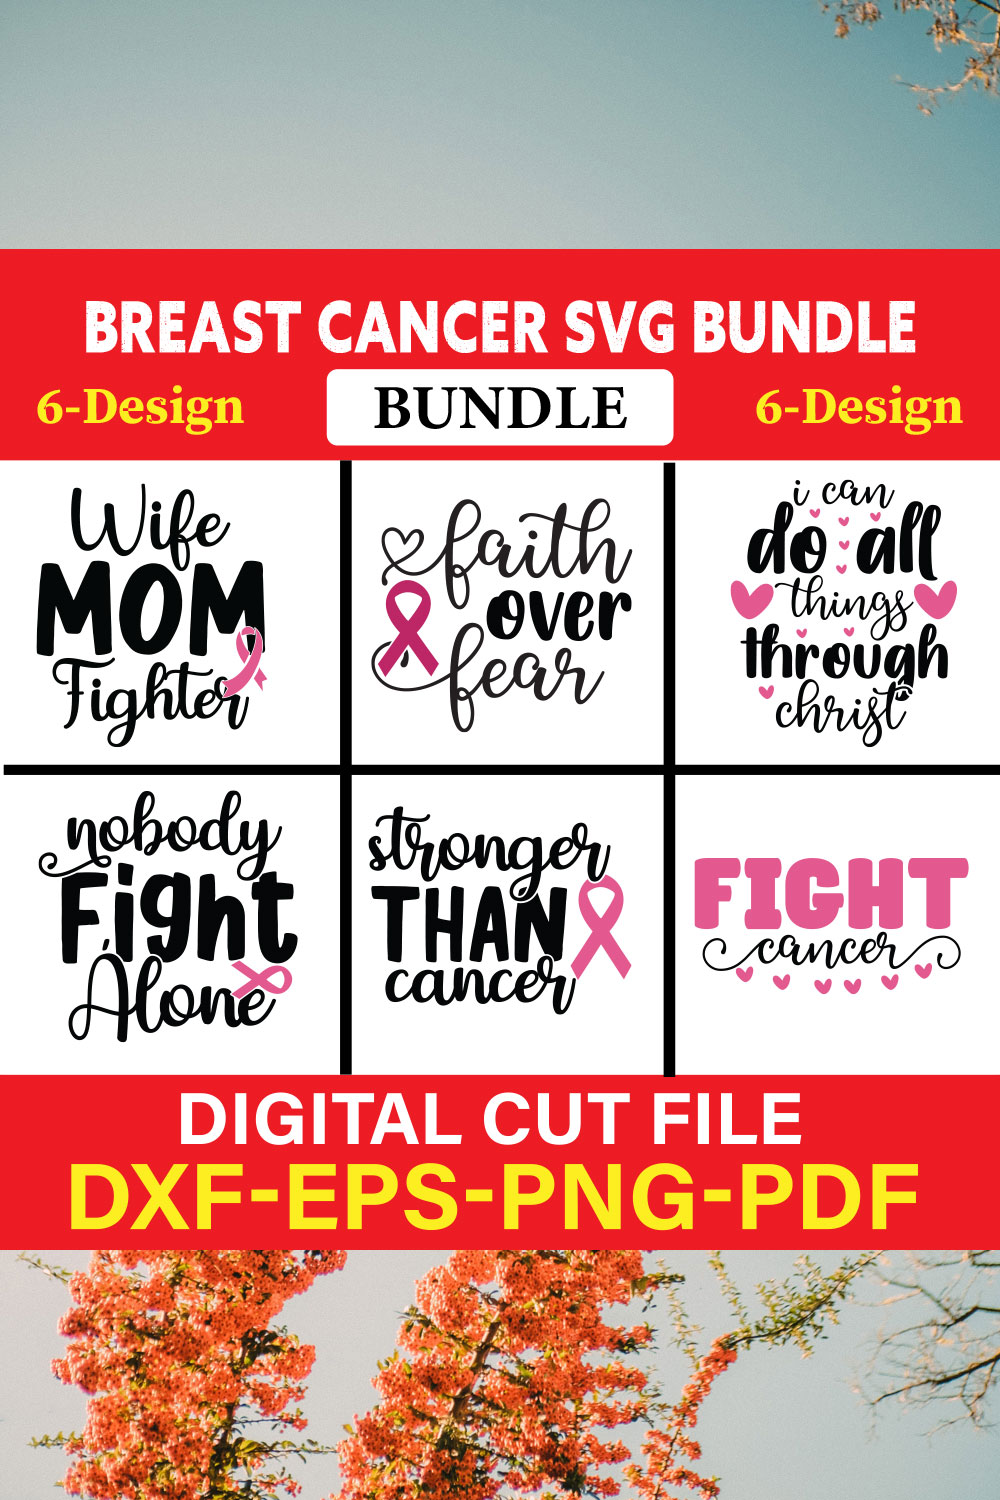 Breast Cancer SVG Bundle, Cancer SVG, Cancer Awareness, Vol-02 pinterest preview image.